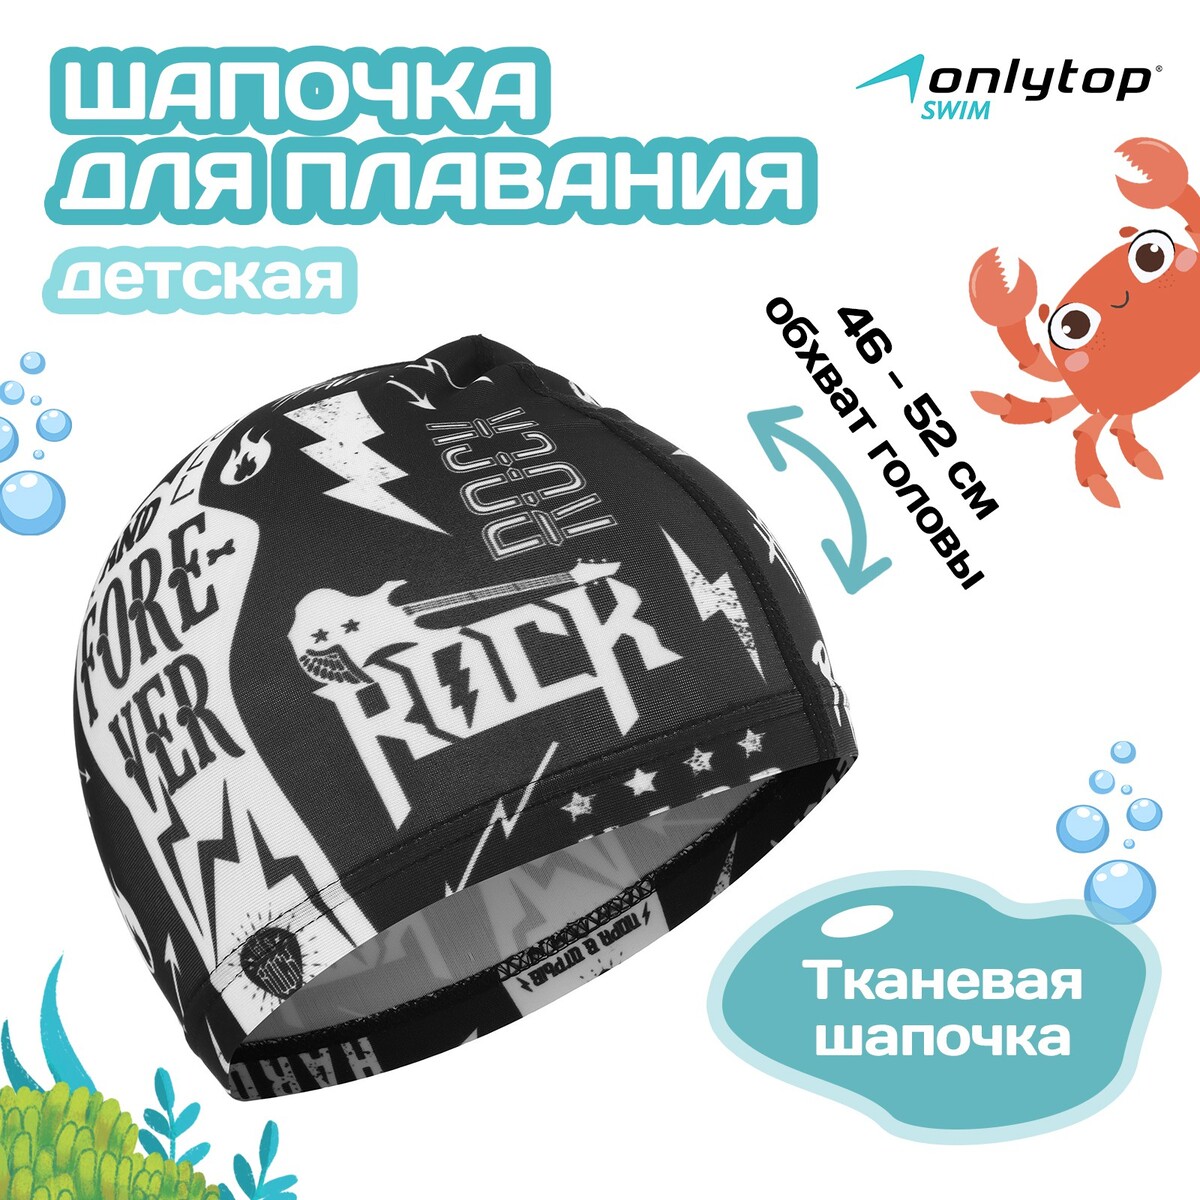 Шапочка для плавания детская rock and roll, тканевая, обхват 46-52 см шапочка для плавания atemi pu 12 тканевая с полиуретановым покрытием серебро